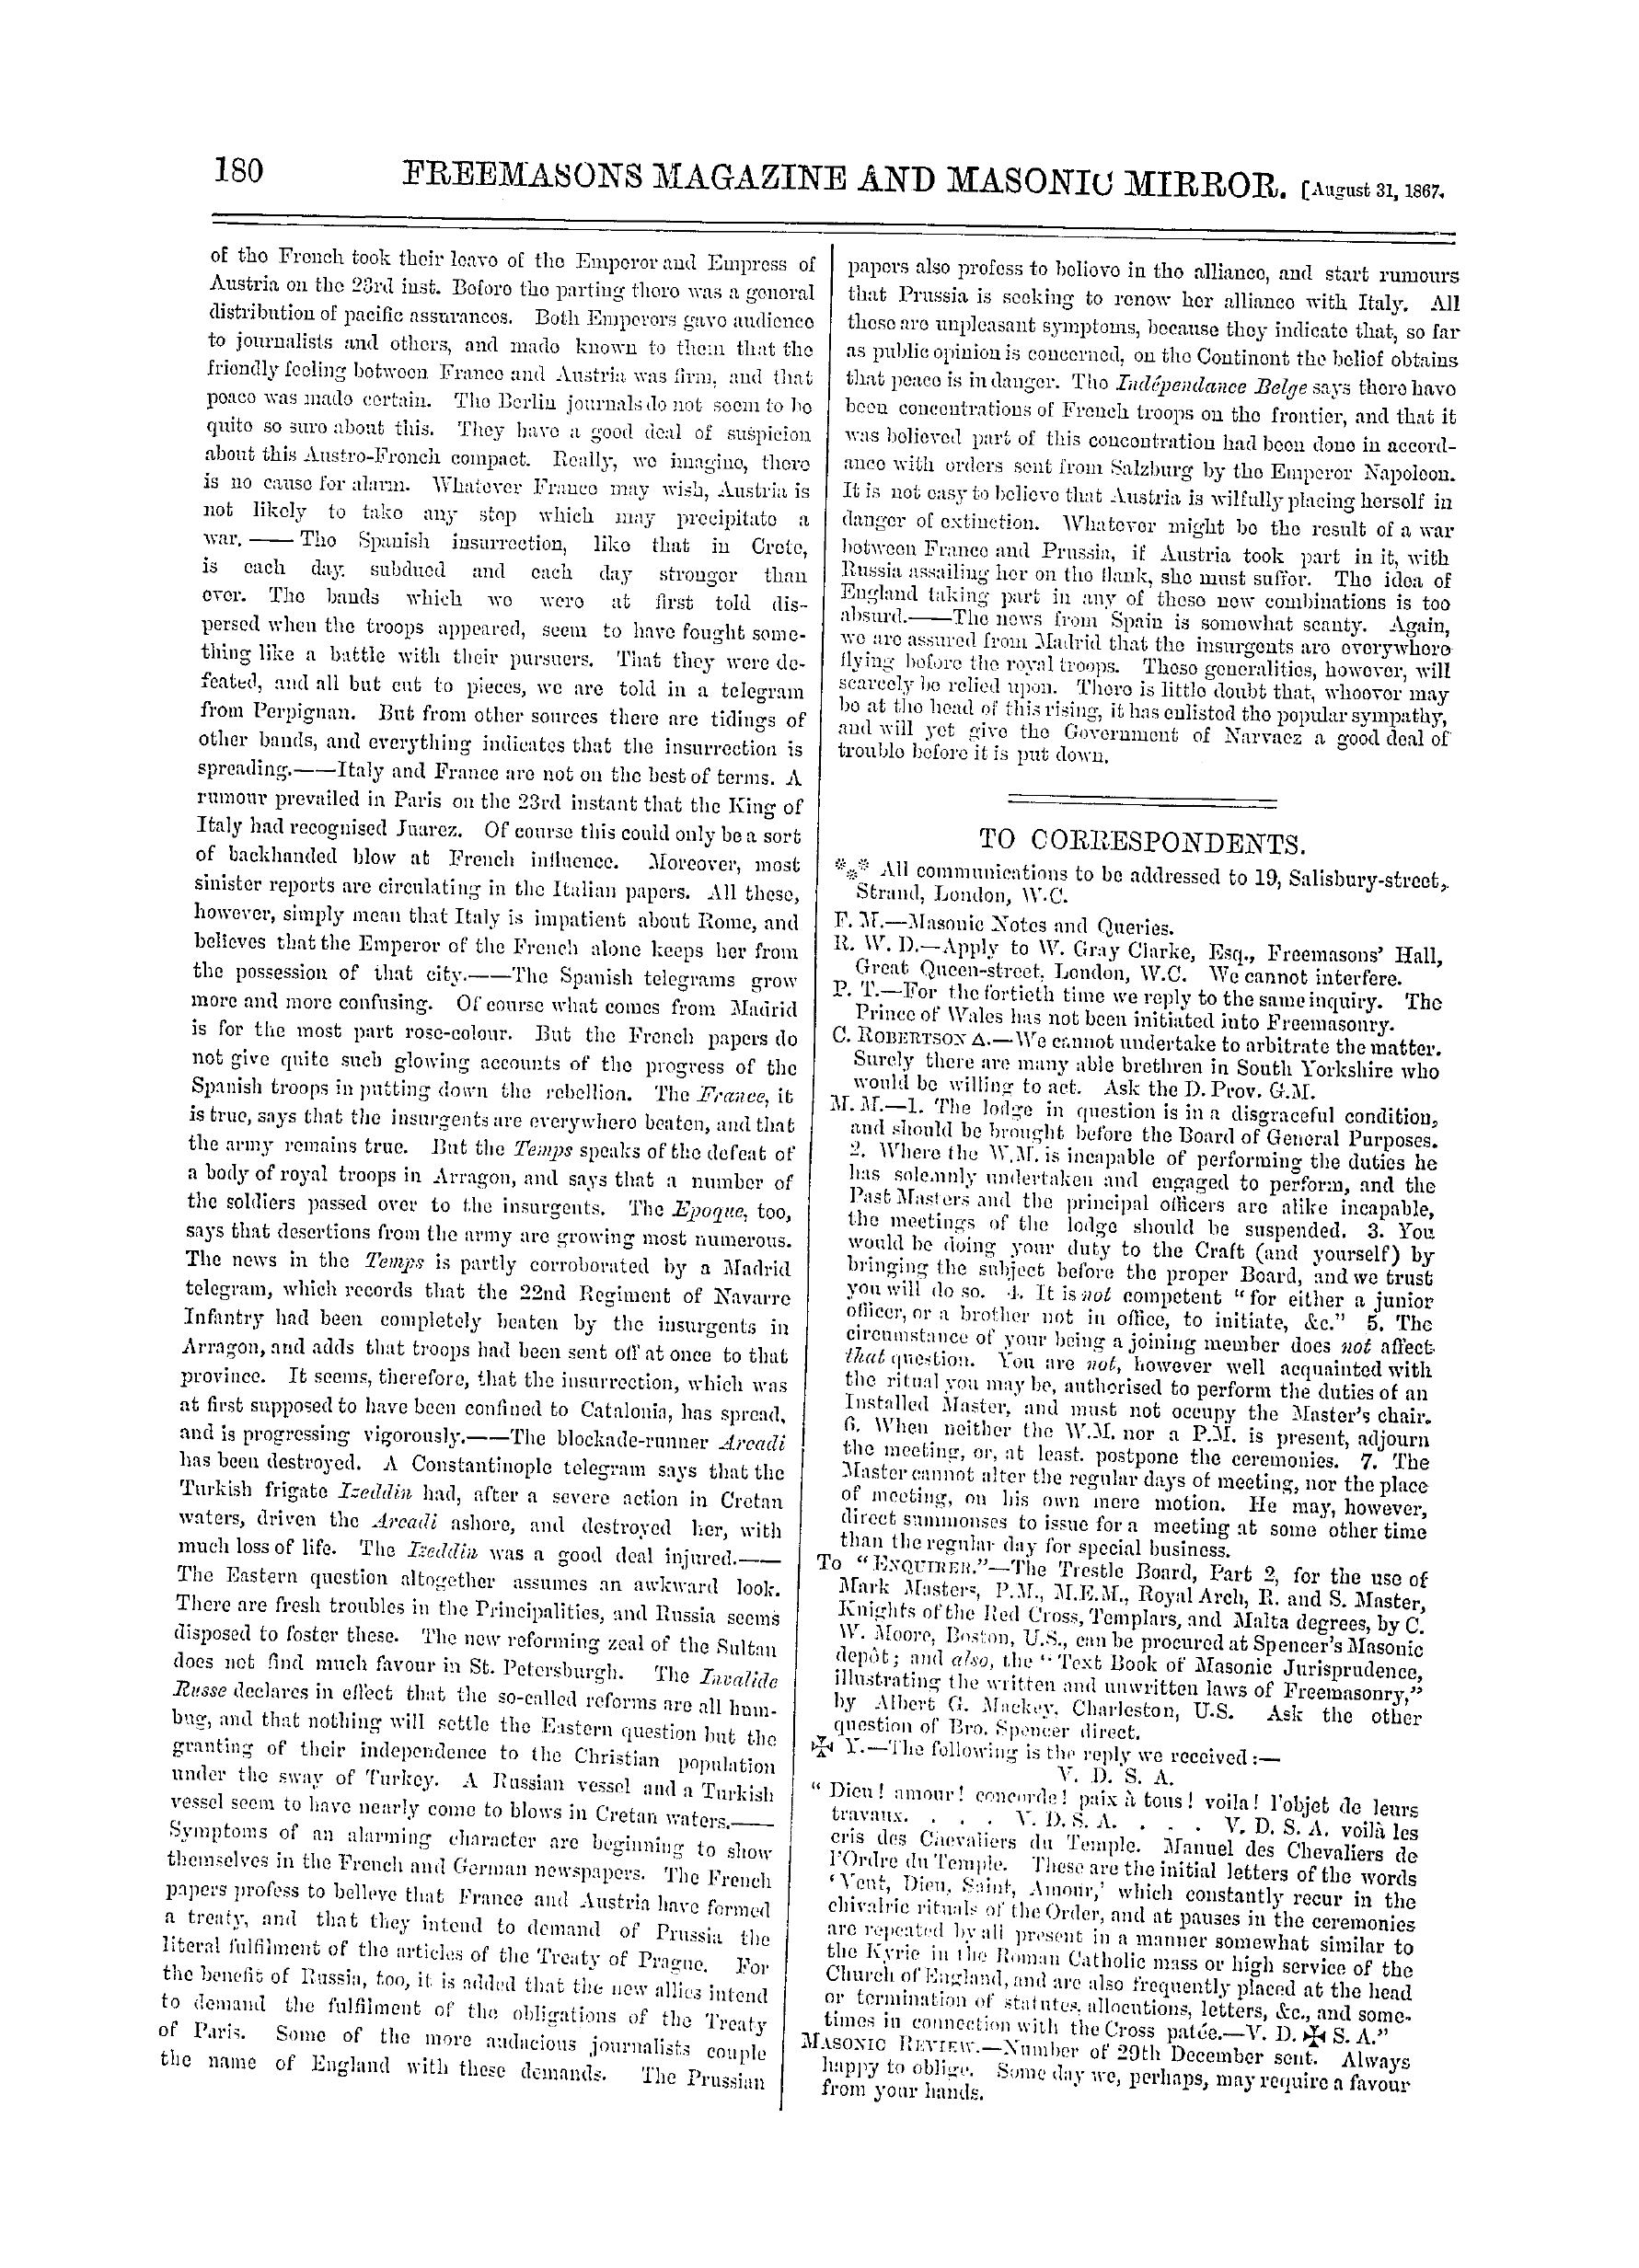 The Freemasons' Monthly Magazine: 1867-08-31: 20